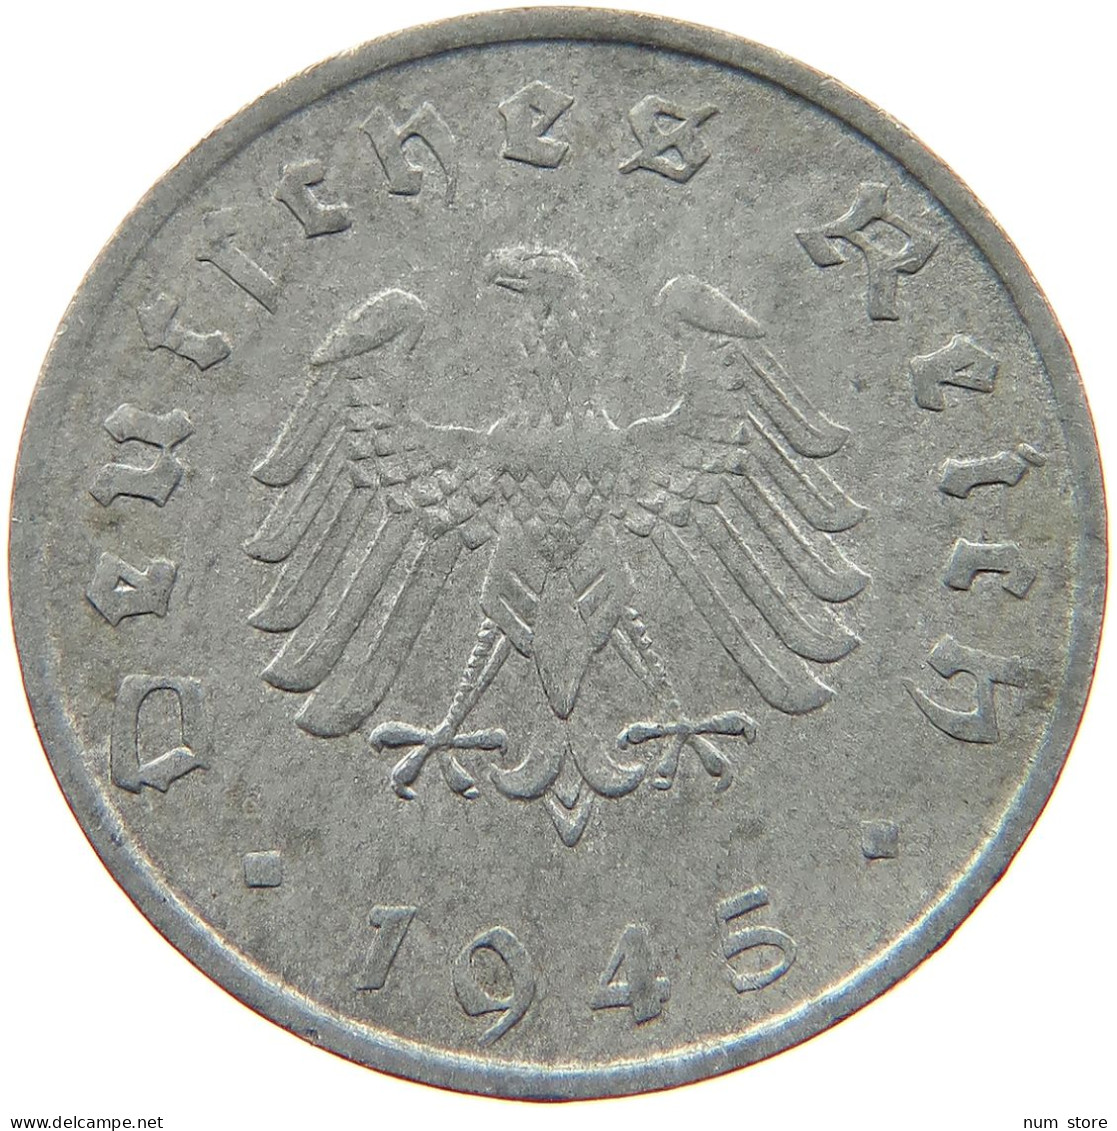 GERMANY 10 REICHSPFENNIG 1945 F #s081 0101 - 10 Reichspfennig